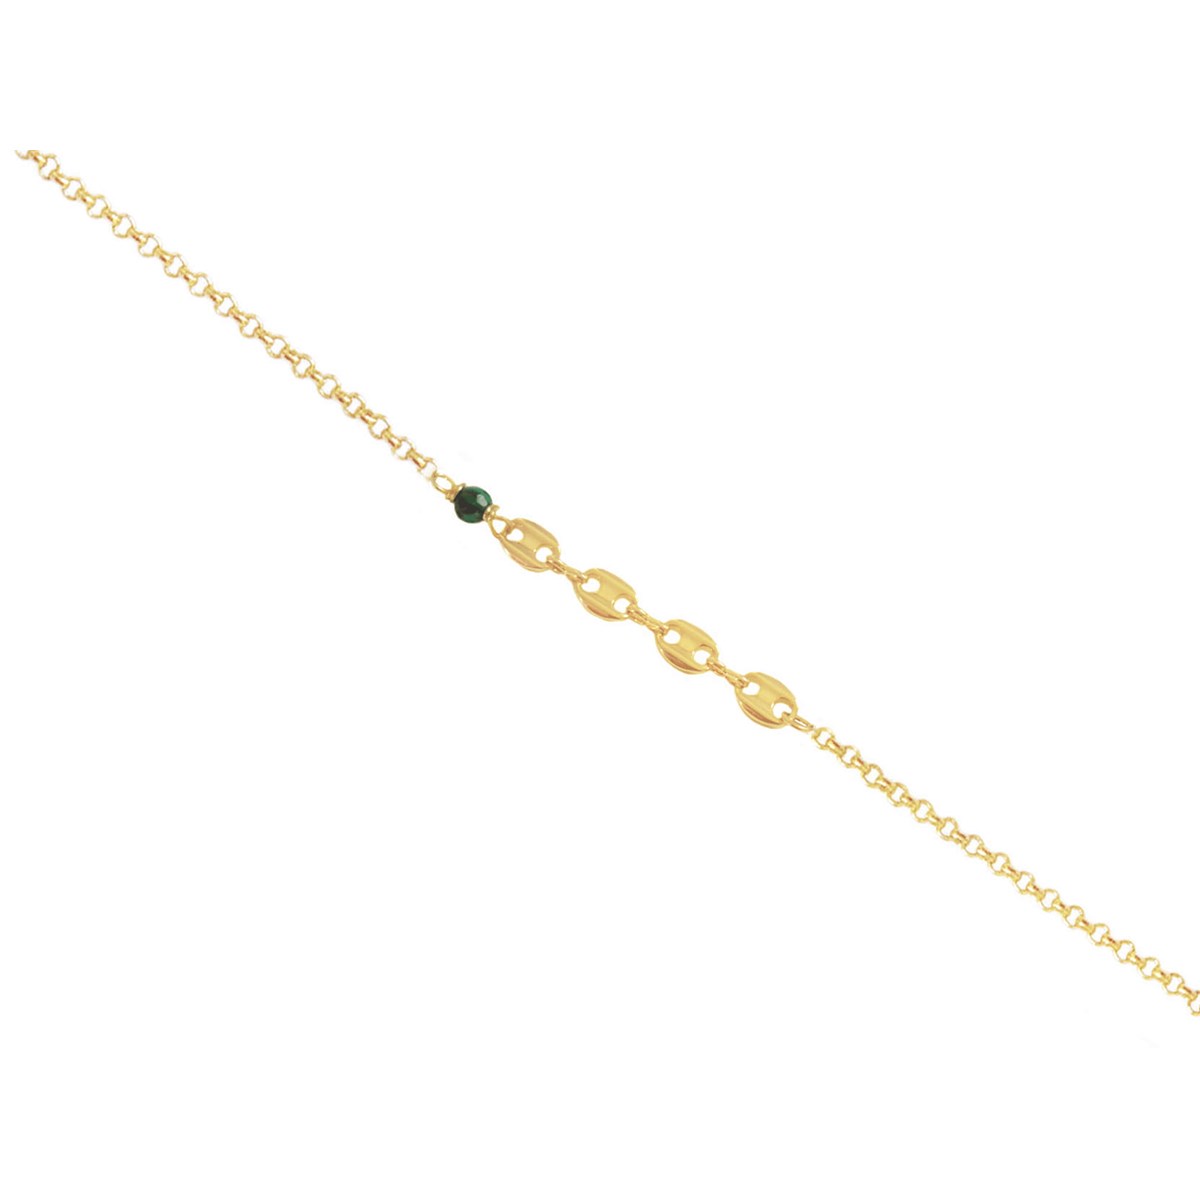 Bracelet souple  grain de  café perle de malachite  -Doré à l'or fin